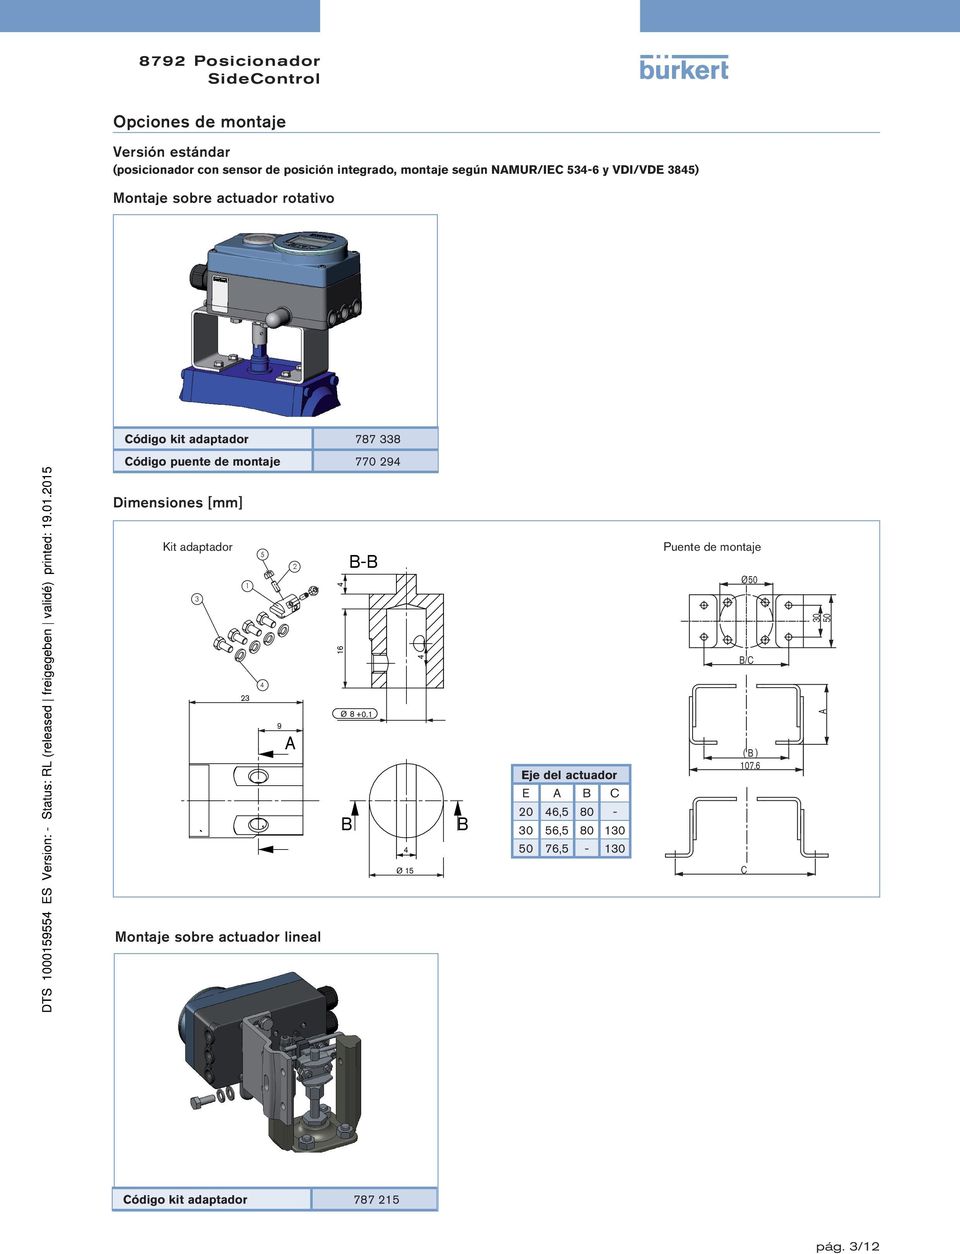 Dimensiones [mm] Kit adaptador 1 5 B-B Puente de montaje 50 16 0 50 B/C 9 8 +0.